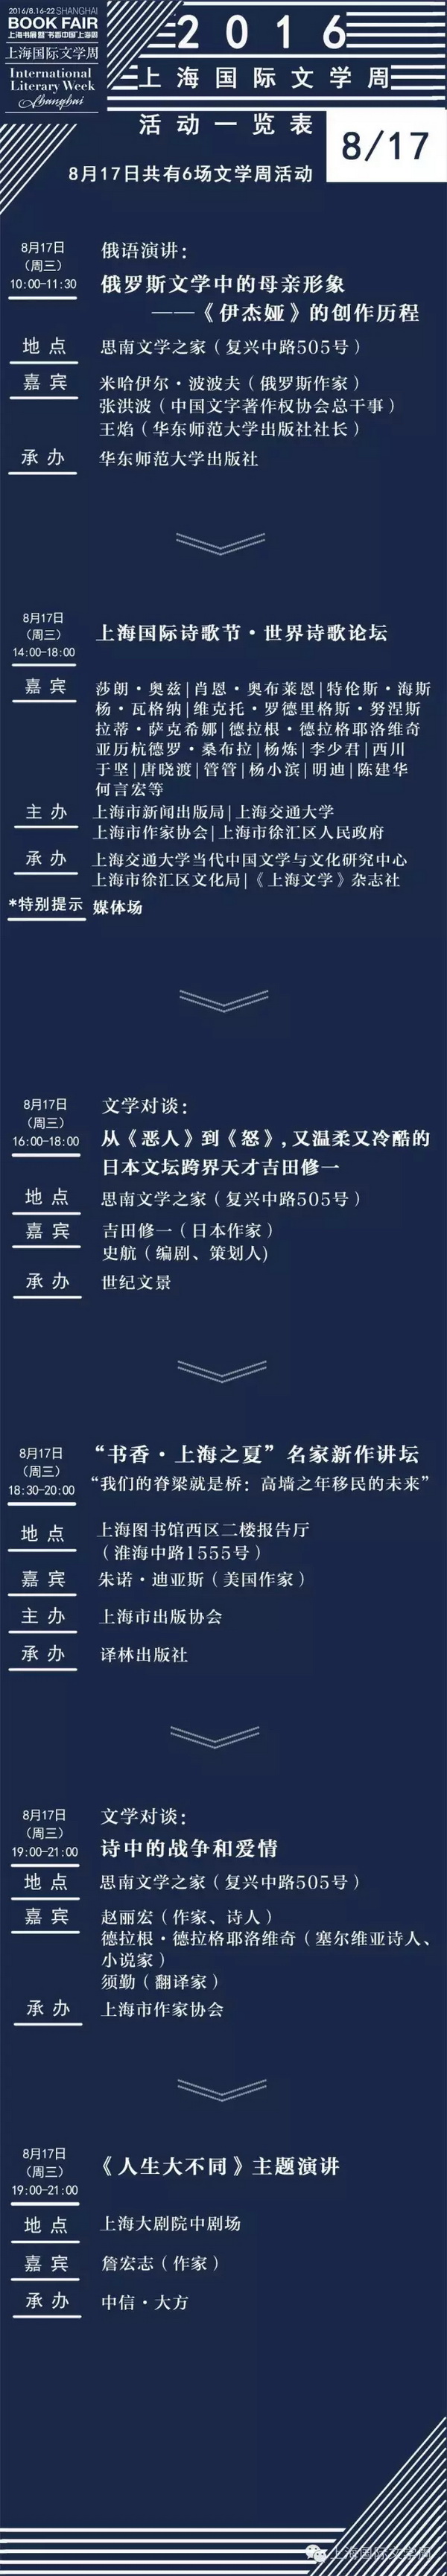 2016上海国际文学周活动全预告